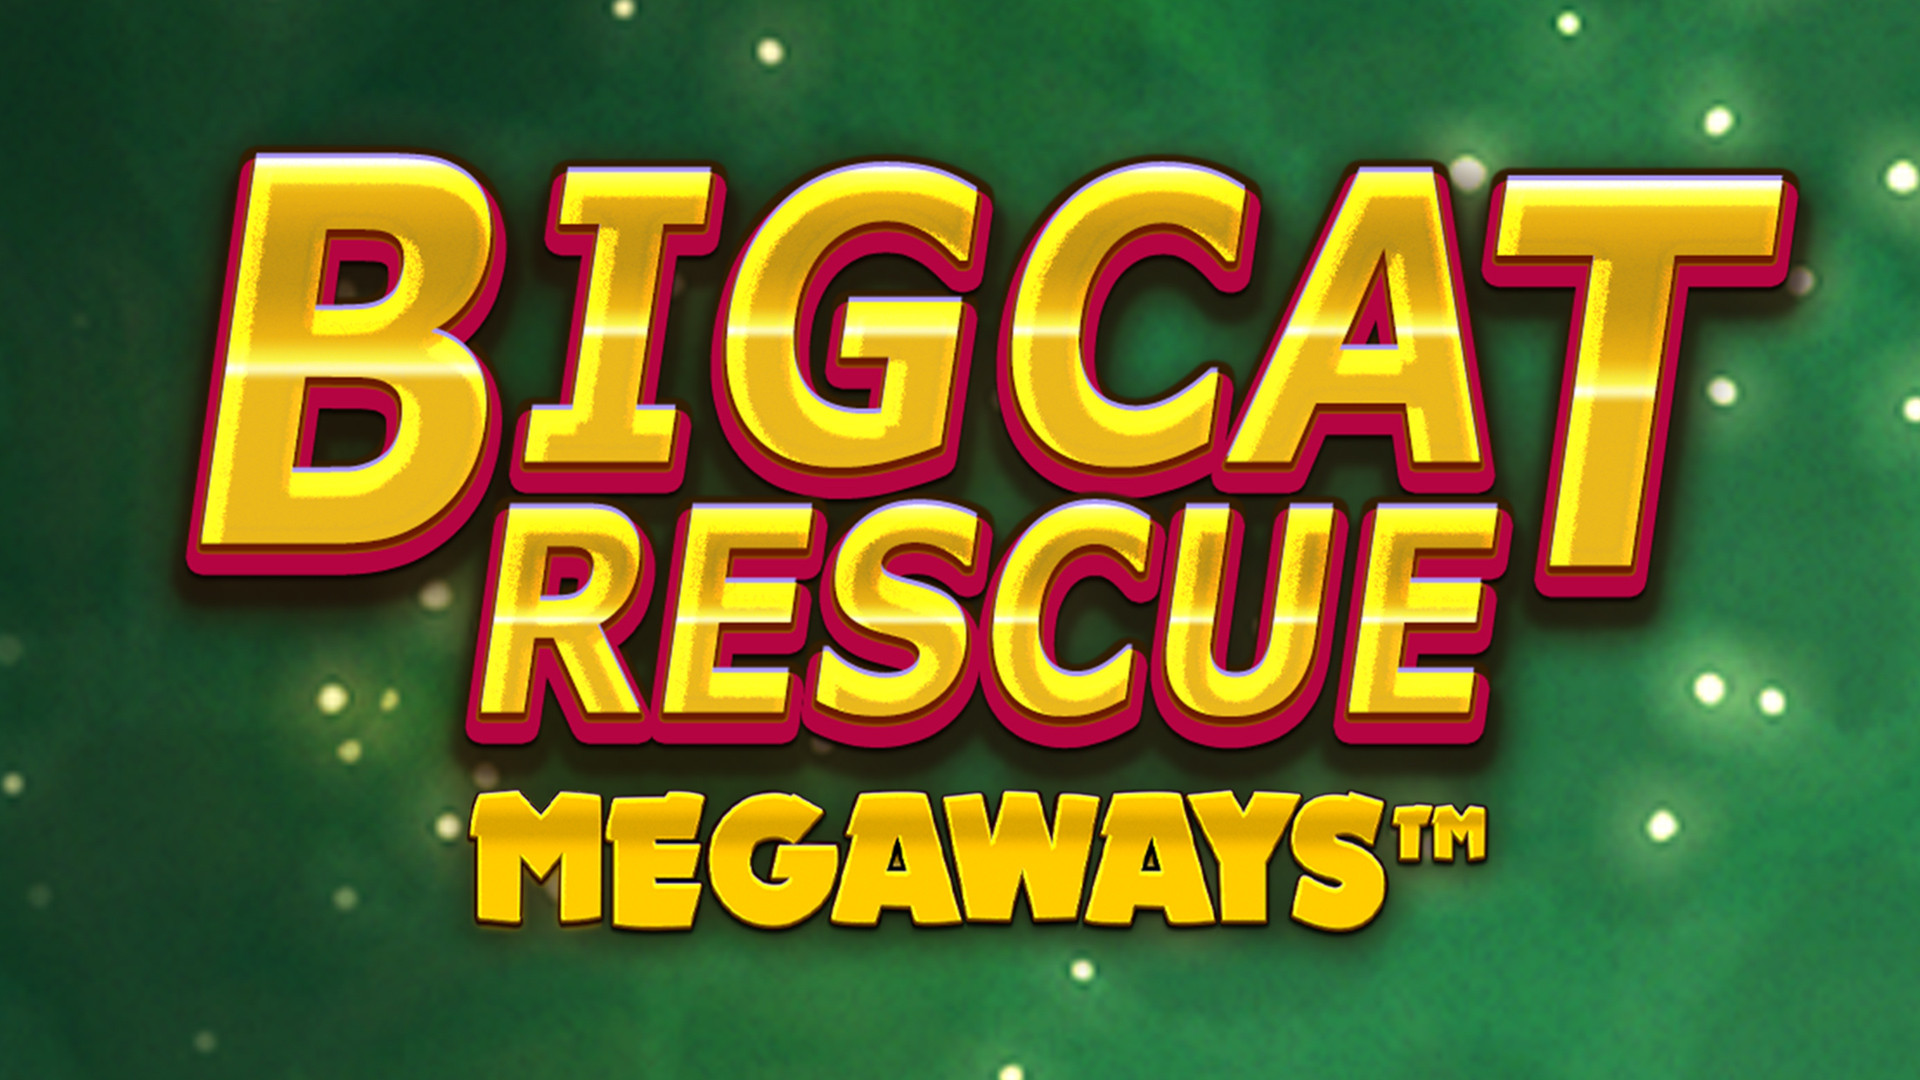 Big Cat Rescue MEGAWAYS